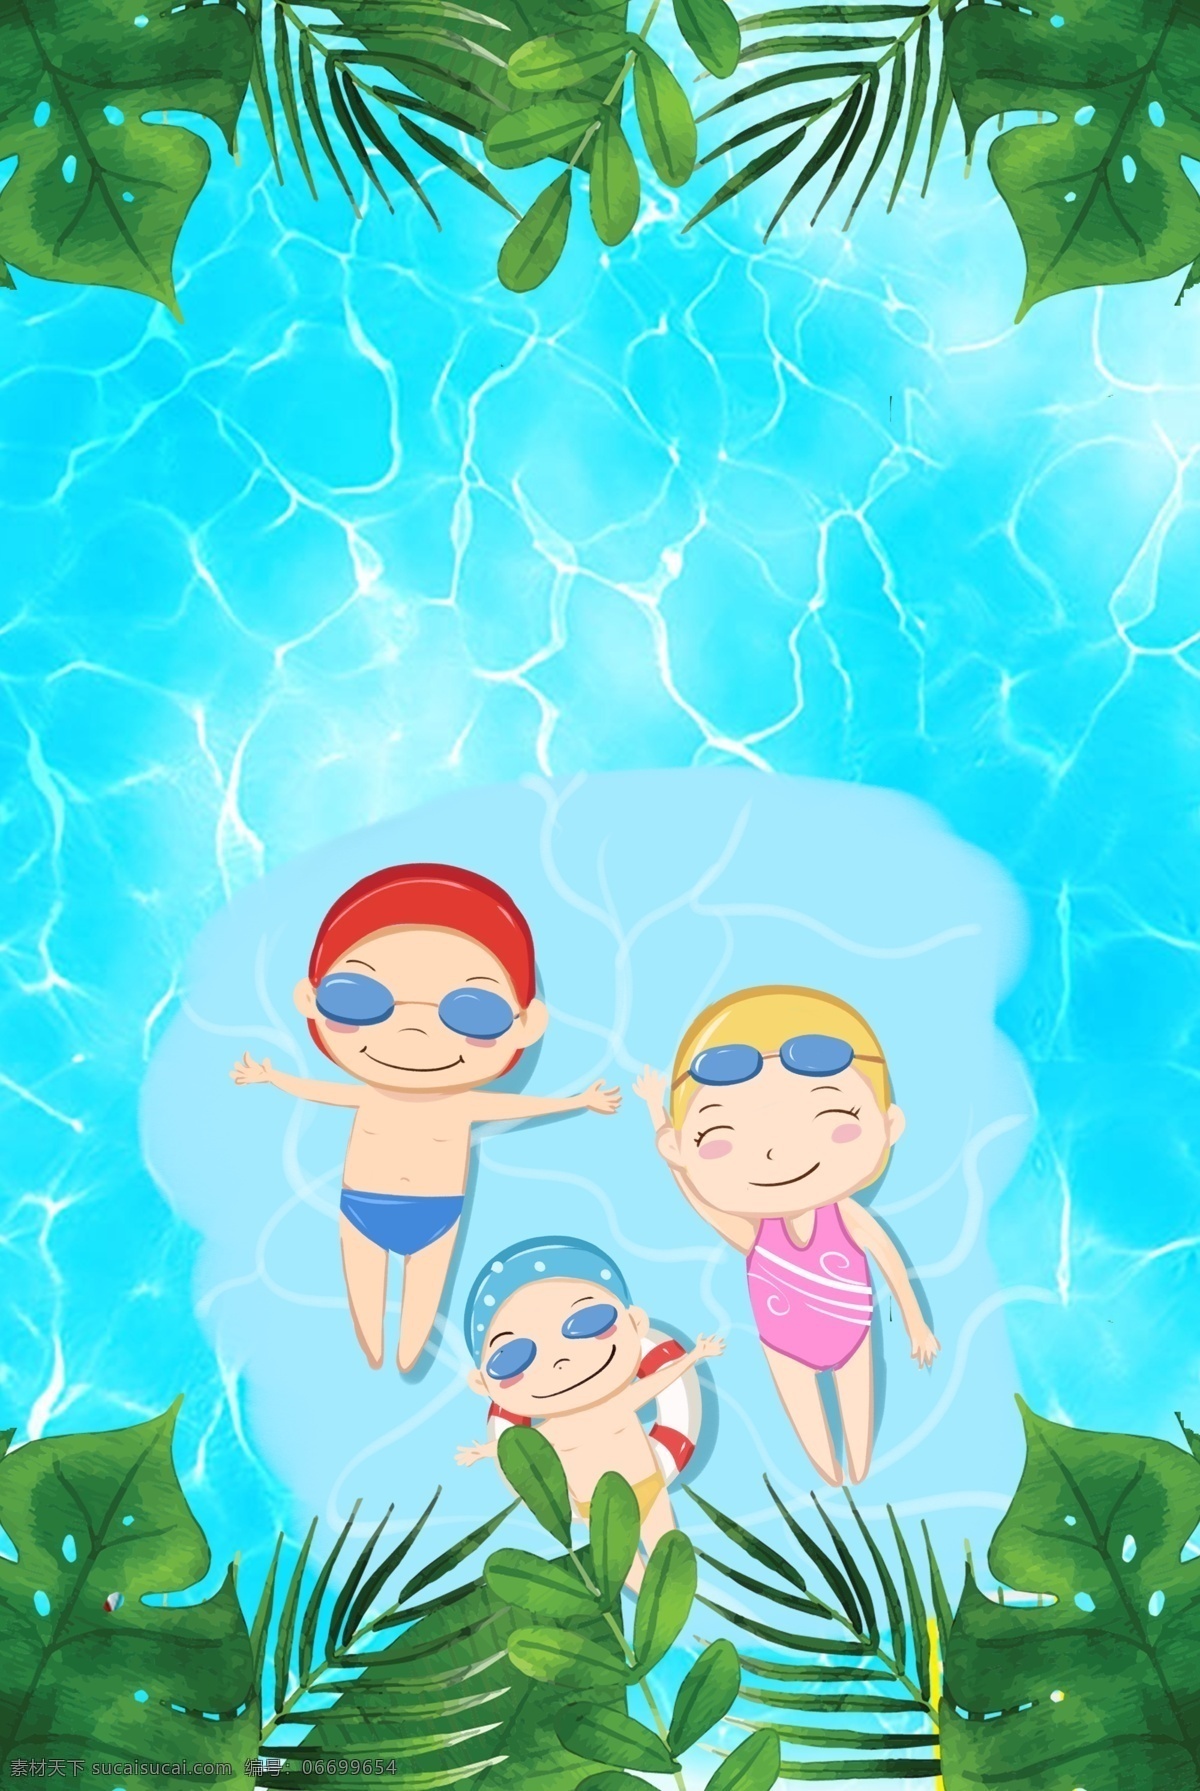 夏日 游泳 清爽 蓝色 场景 卡通 手绘 清新 自然 主题 背景